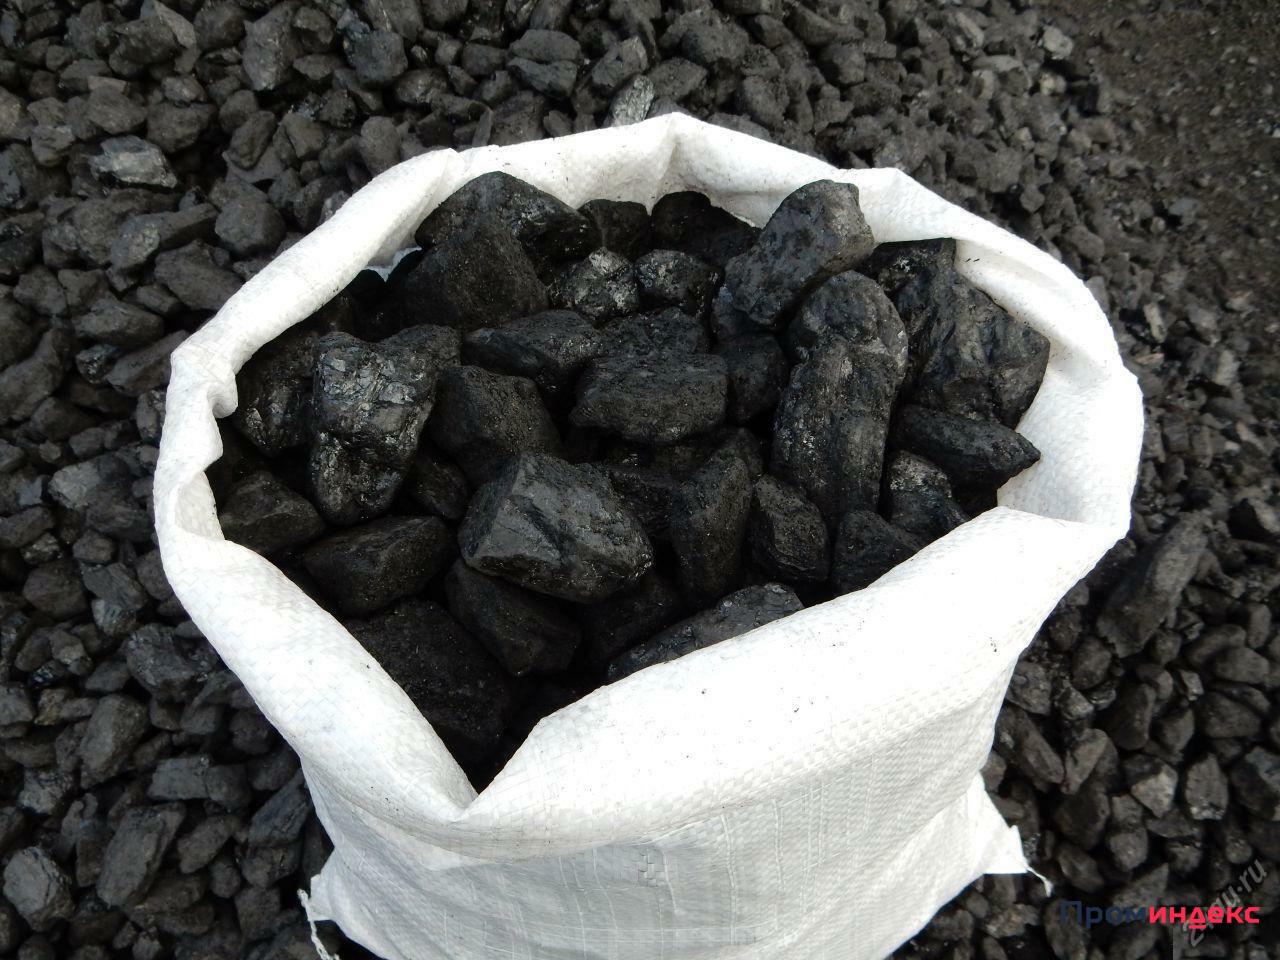 Купить уголь в мешках в новокузнецке. Уголь каменный марки ДПК. Уголь ДПК 200. Уголь ДПК 50-200мм. Уголь бурый каменный антрацит.